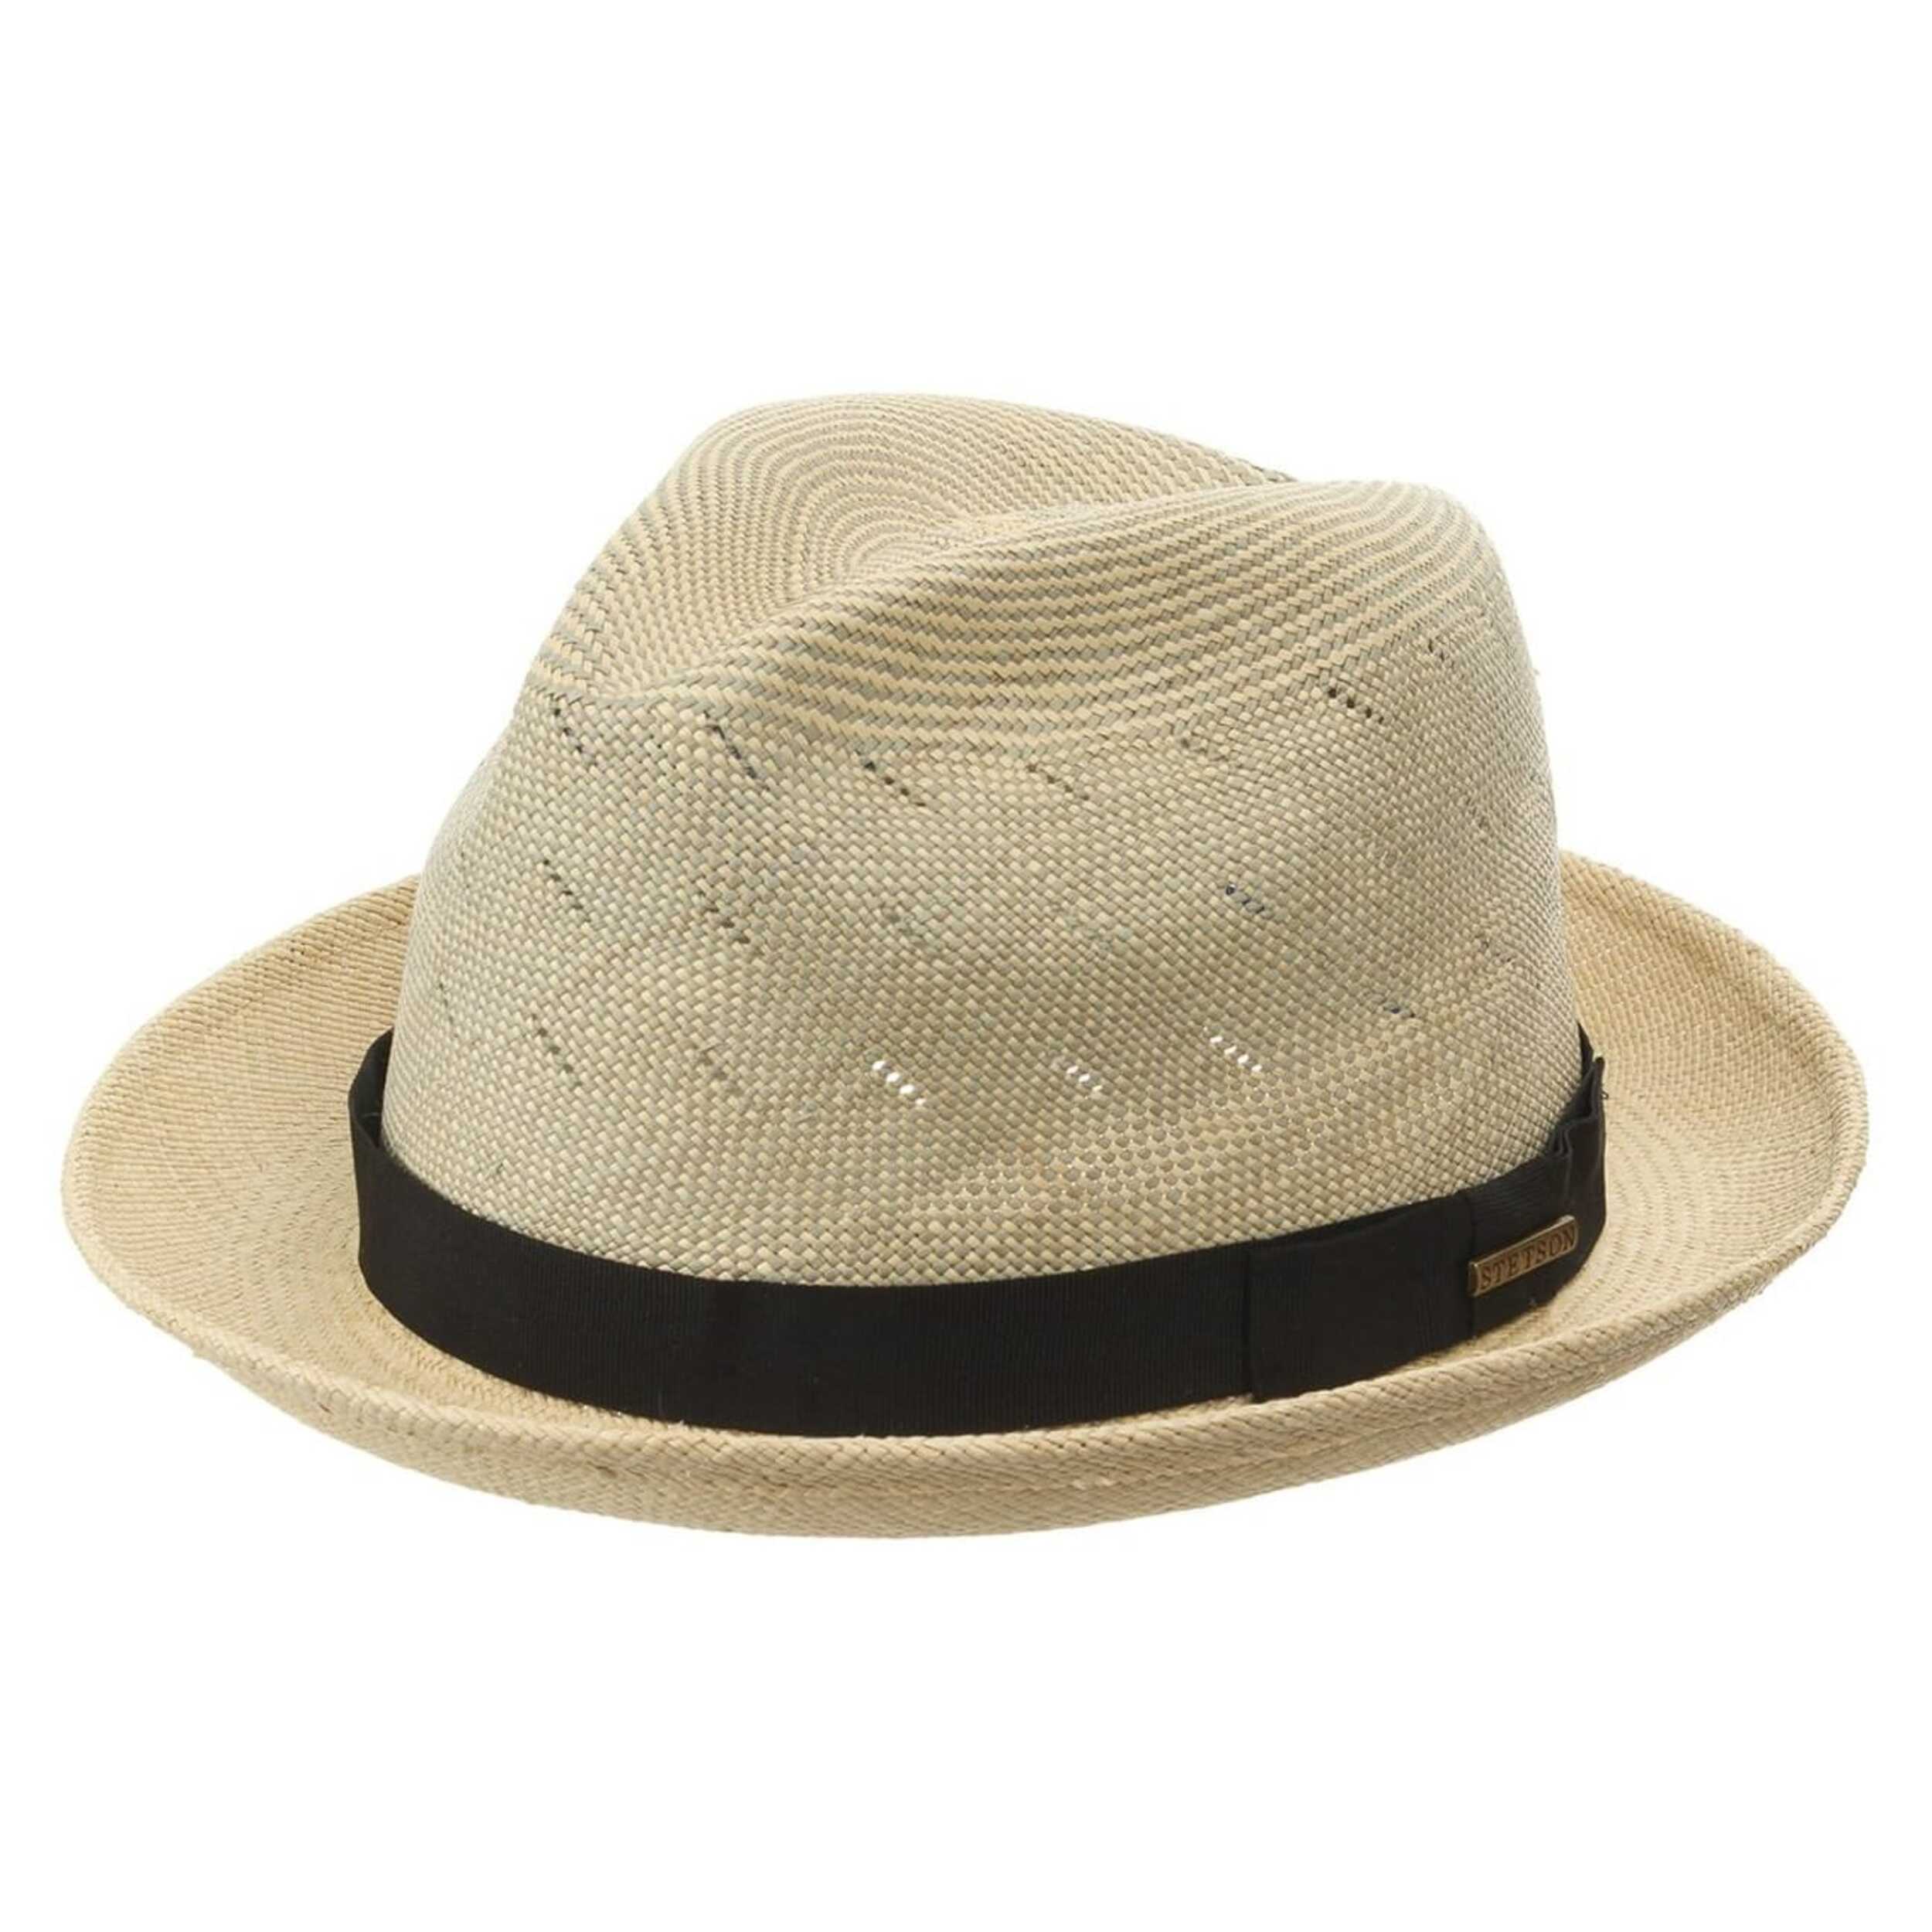 Girard Panama Hat by Stetson - 99,00